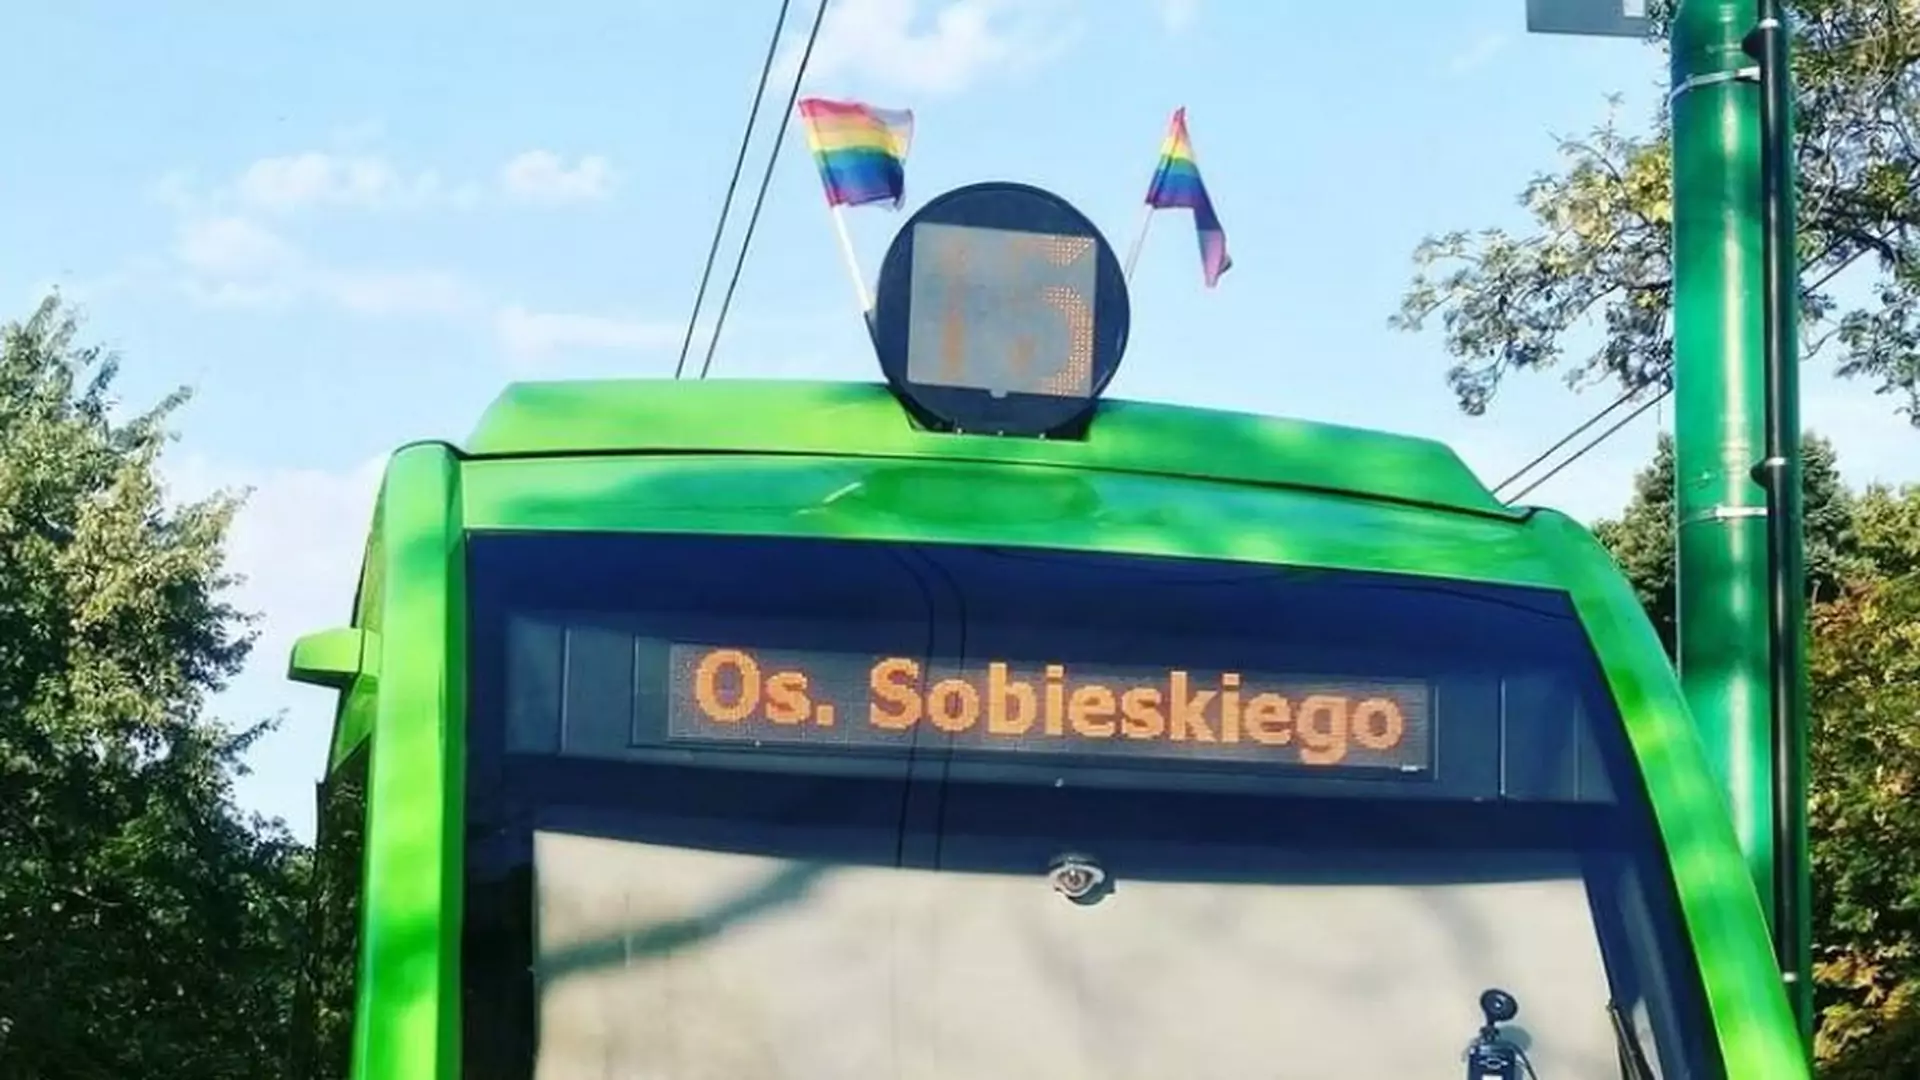 MPK Poznań zamiast miłości wybrało homofobię. Co oznaczają zdjęte flagi LGBT?